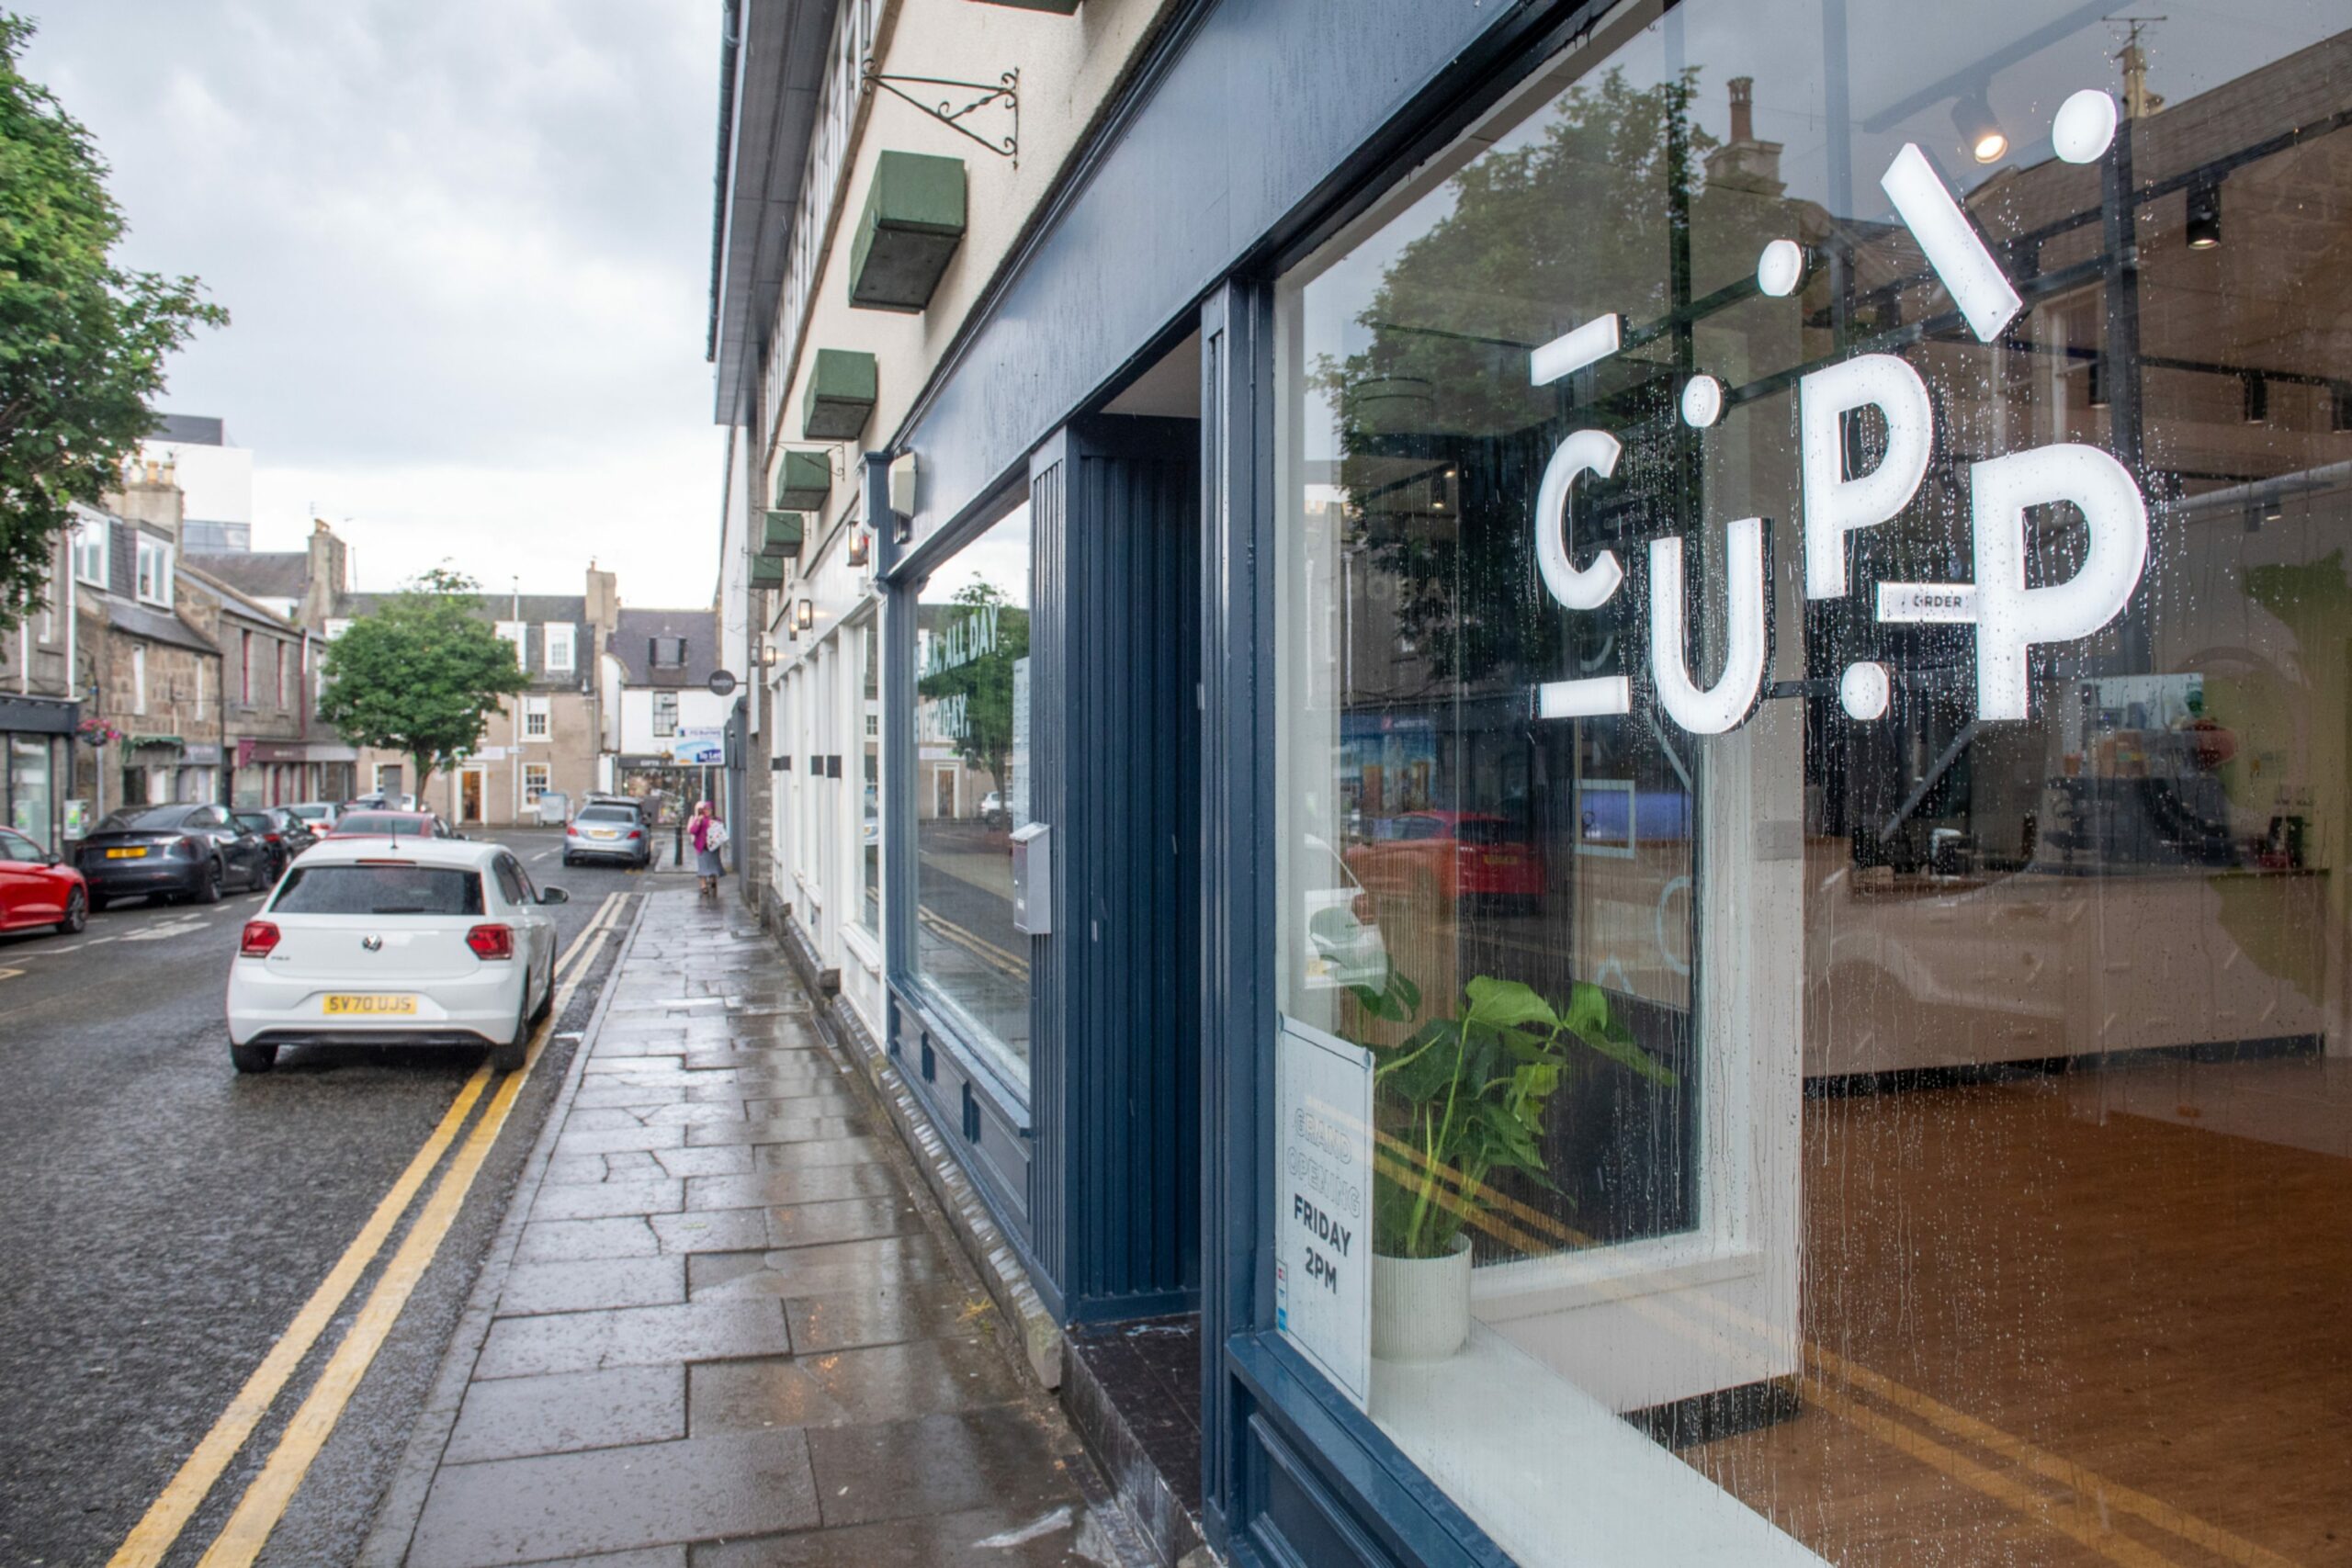 View of street outside CUPP Bubble Tea's Aberdeen shop.